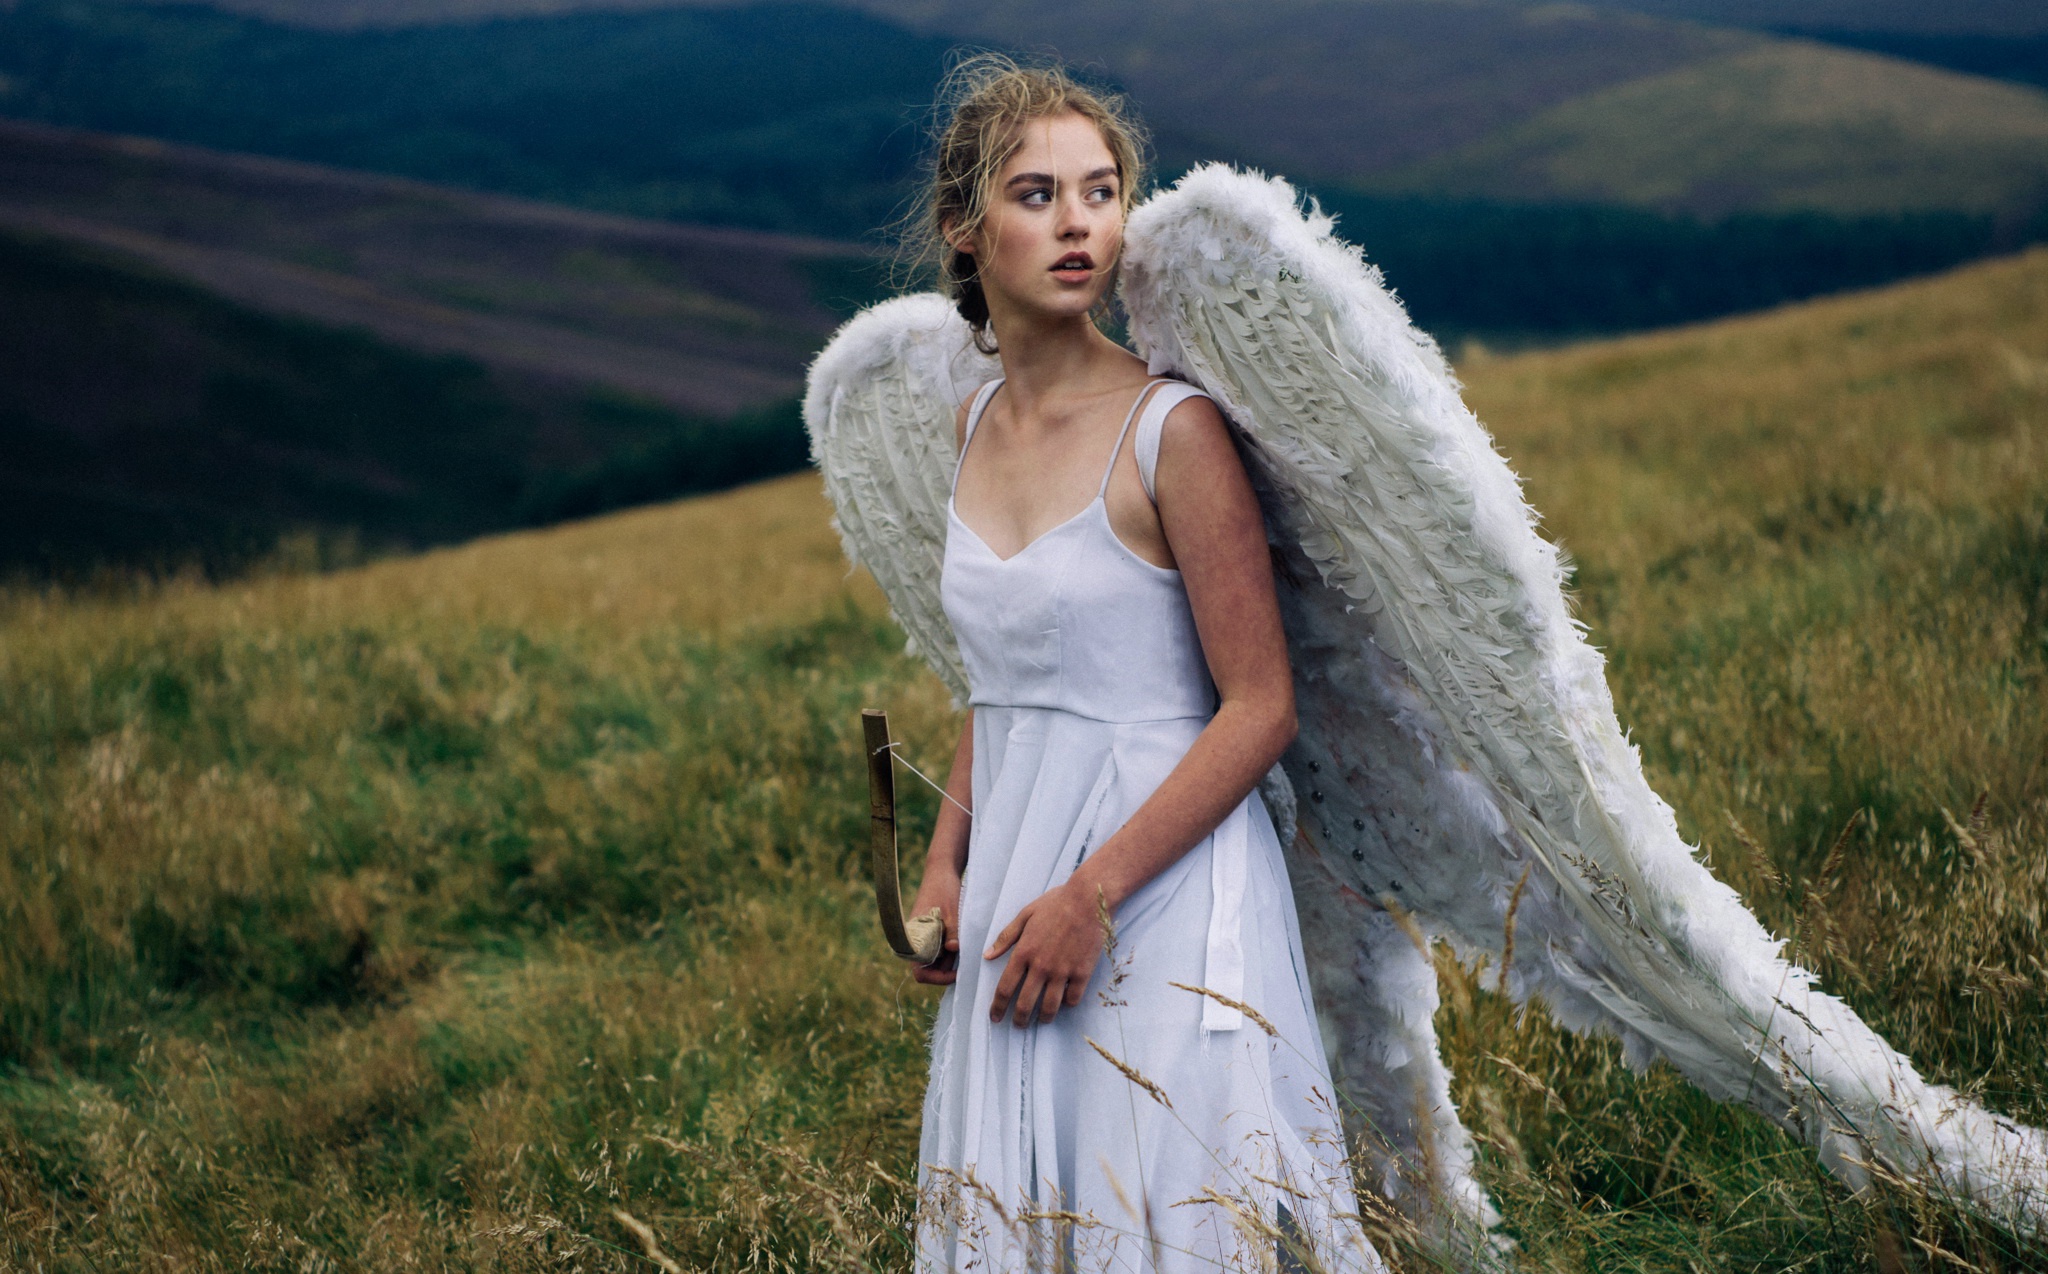 Angeline floreal wun. Девушка - ангел. Дева-ангел. Девушка с крыльями. Фотосессия с крыльями.